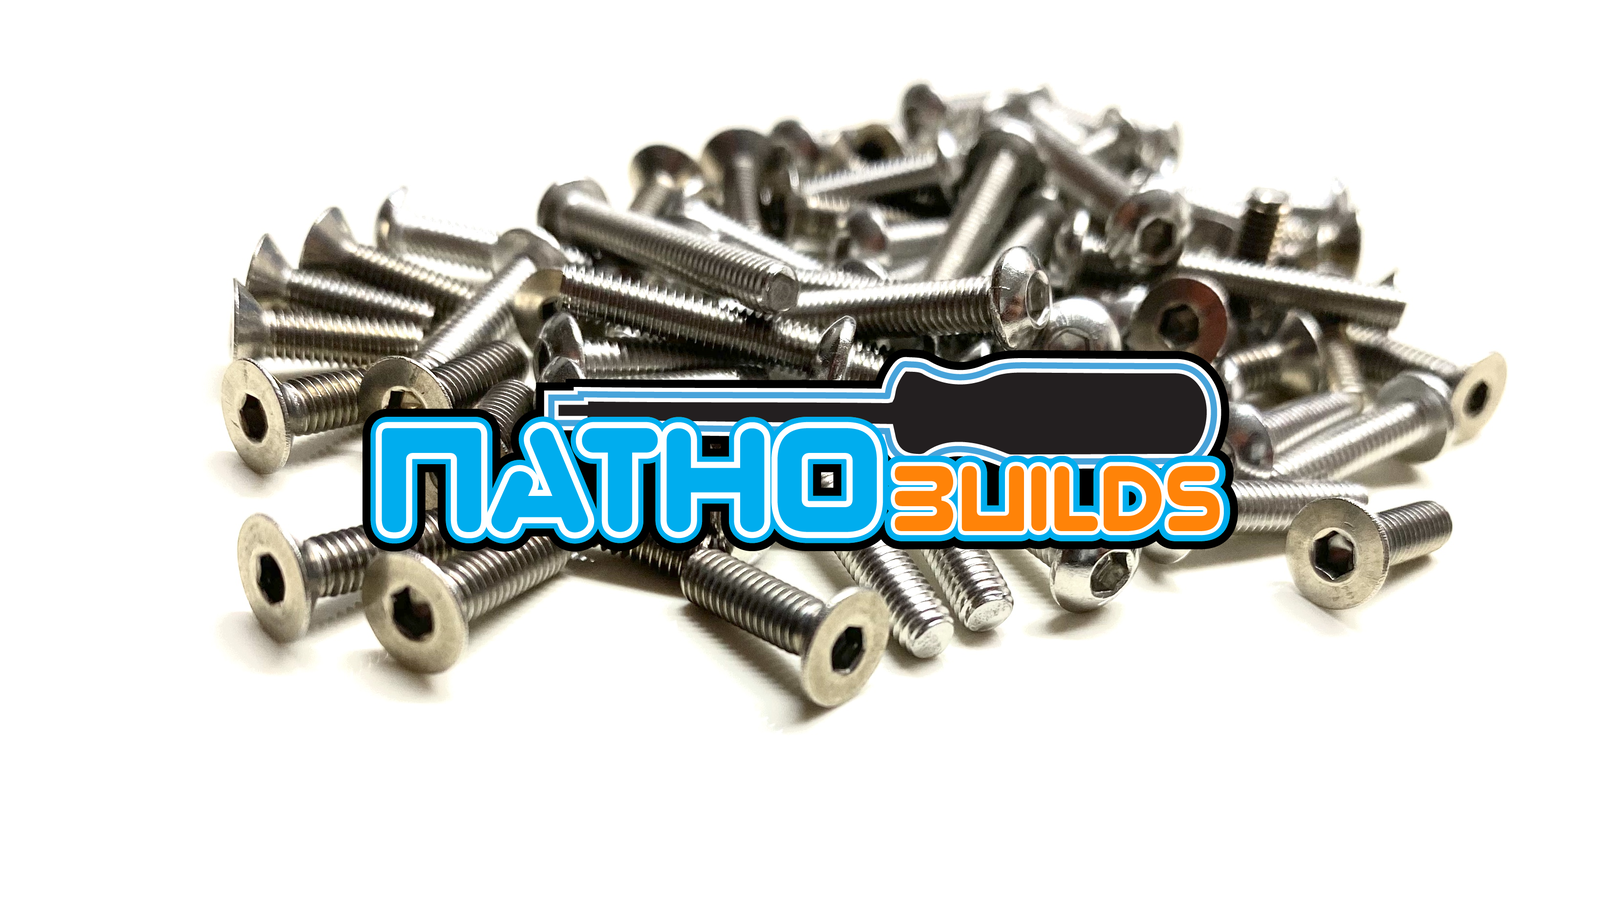 NathoBuilds: Stainless Steel Screw Kits - 4WD - Yokomo YZ-4 SF/SF2